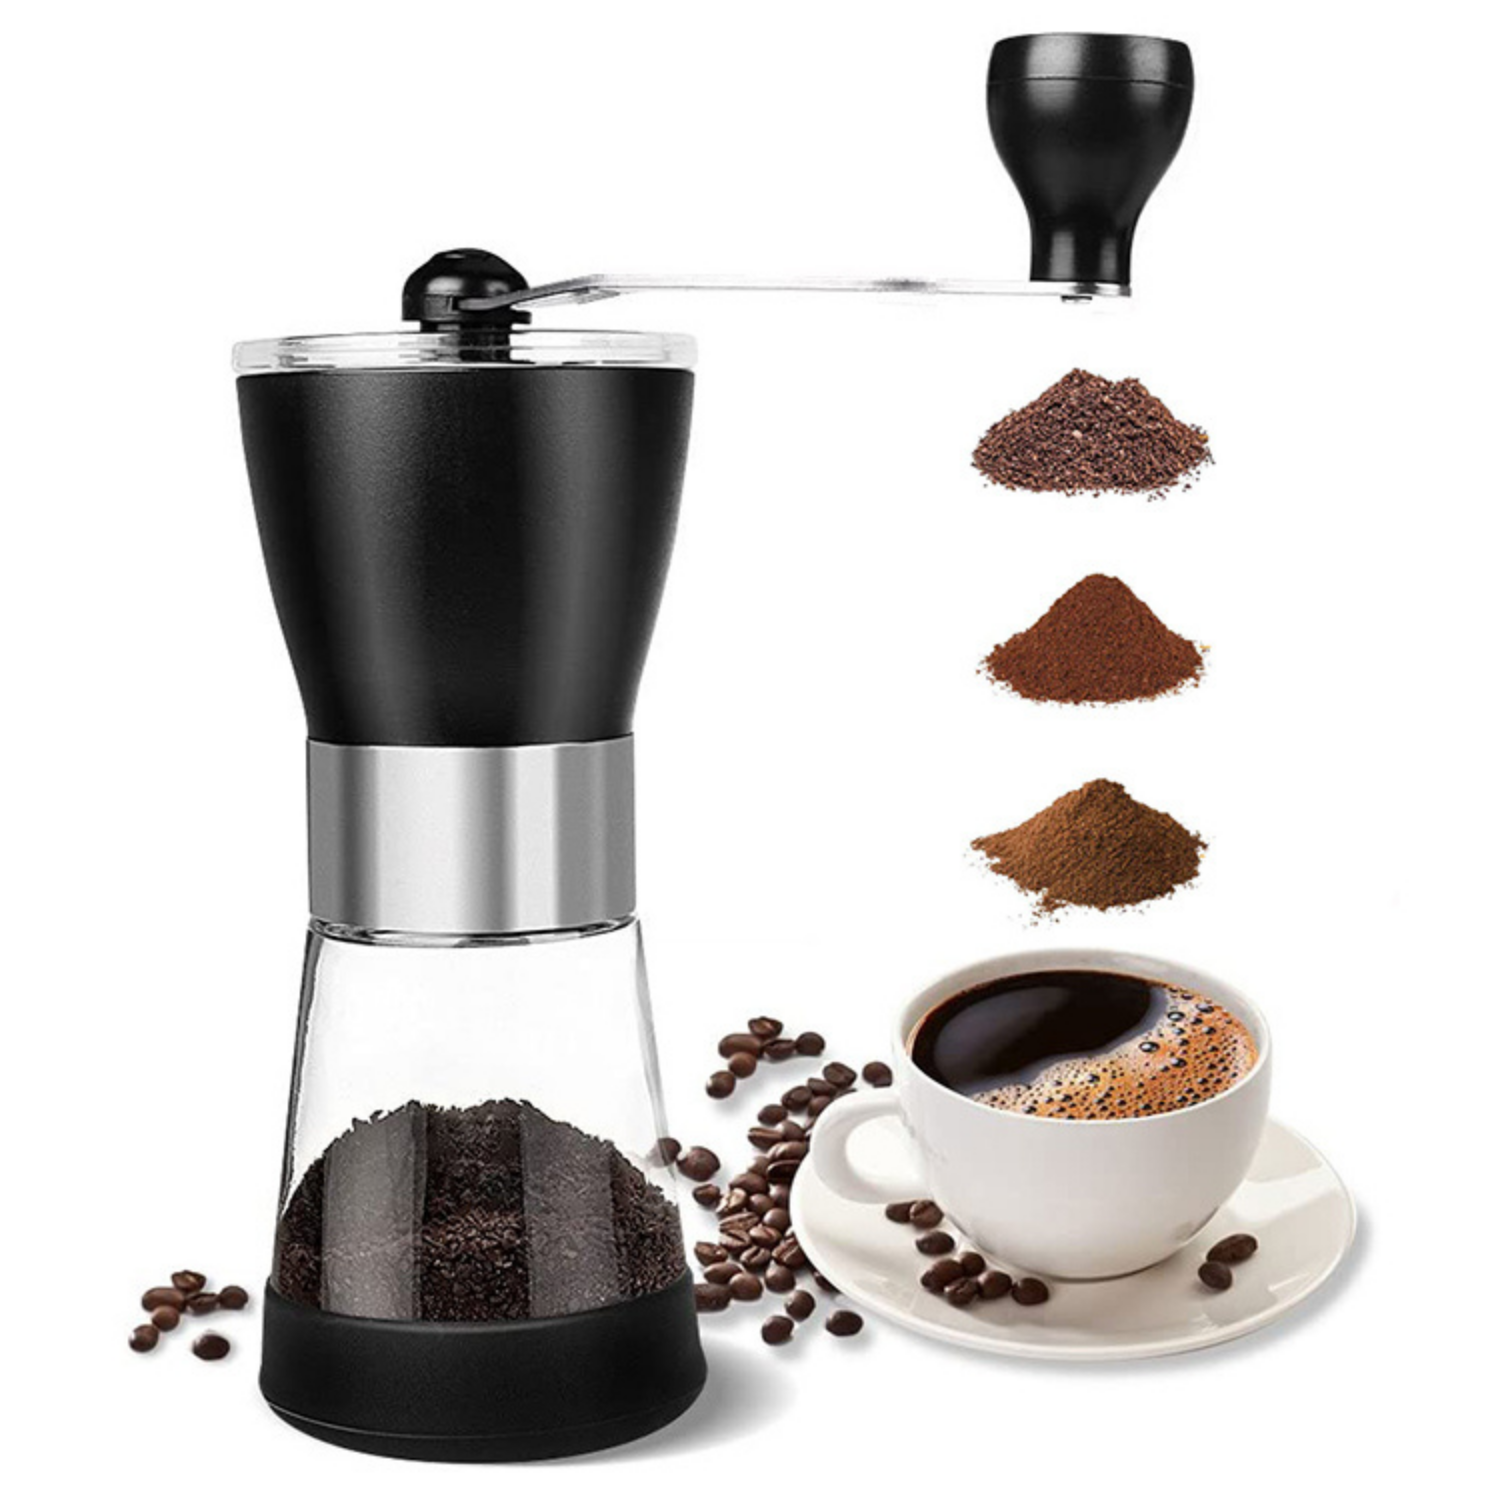 Molinillo de café manual con indicador del café necesario por taza.